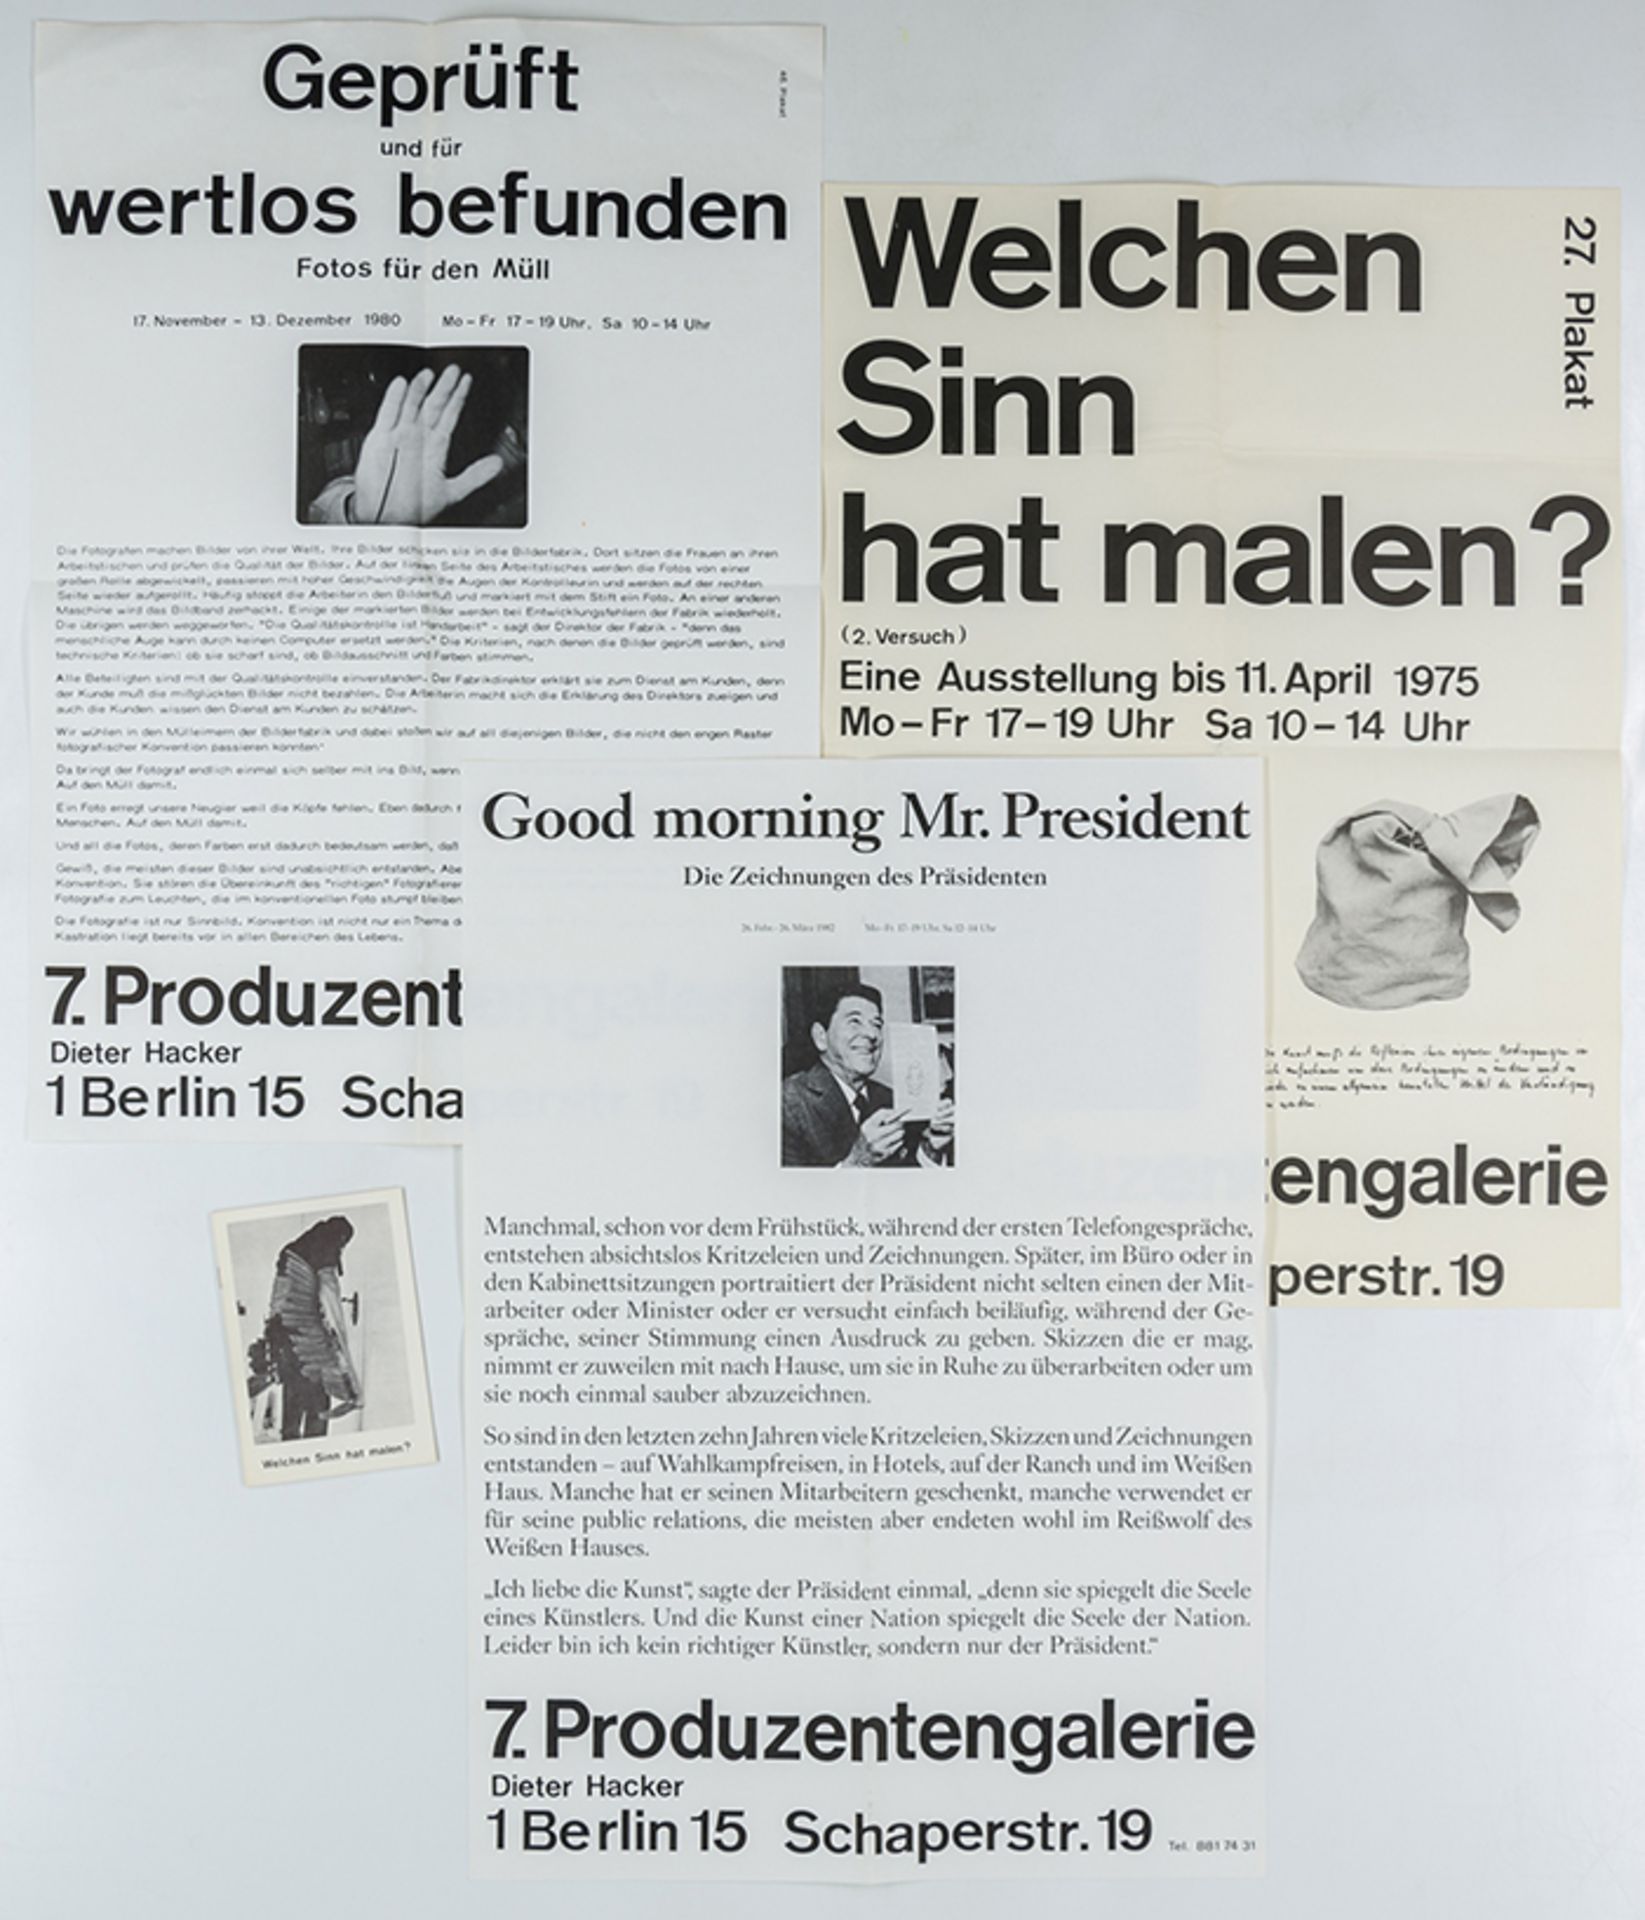 Hacker, Dieter. Sammlung von 21 Ausstellungsplakaten der "7. Produzentengalerie". Berlin, 197